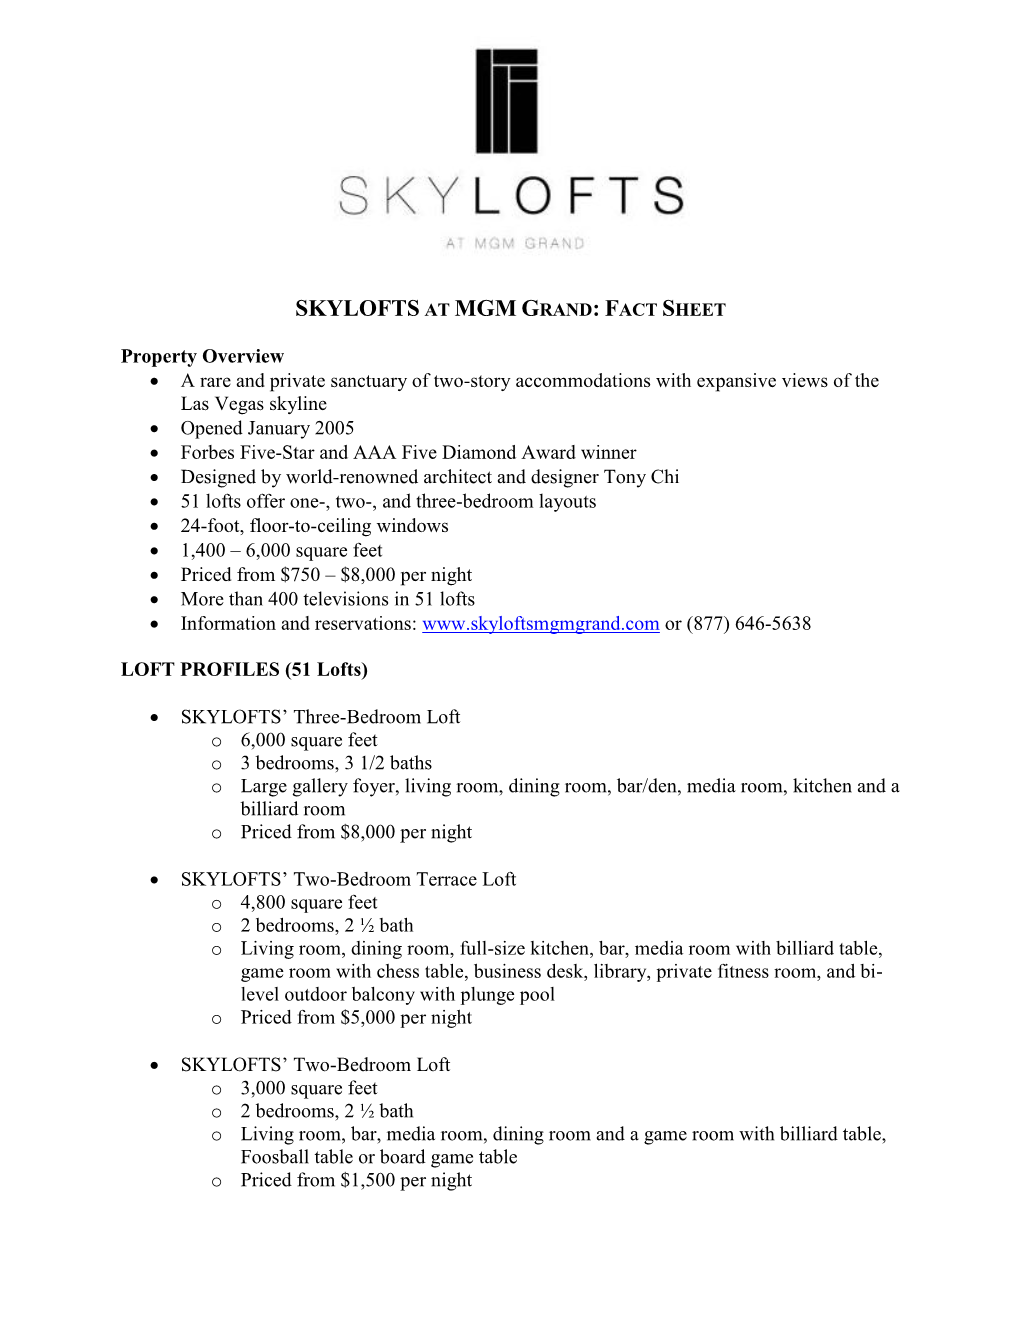 Skylofts at Mgm Grand: Fact Sheet